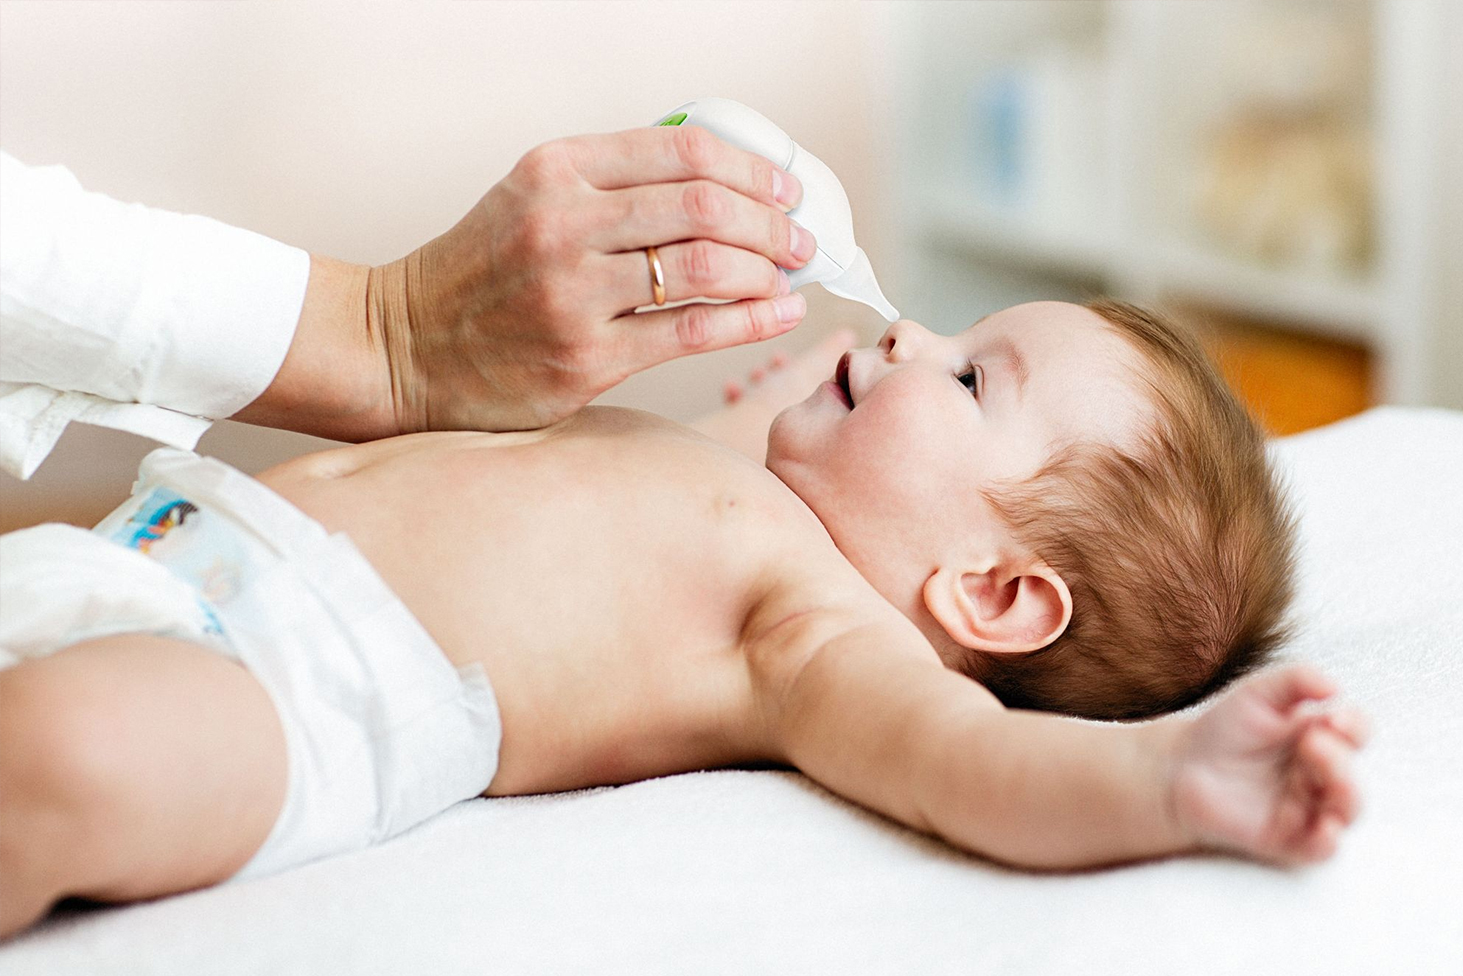 Les bons gestes Santé : coton ou lingettes pour nettoyer votre bébé -  Everykid